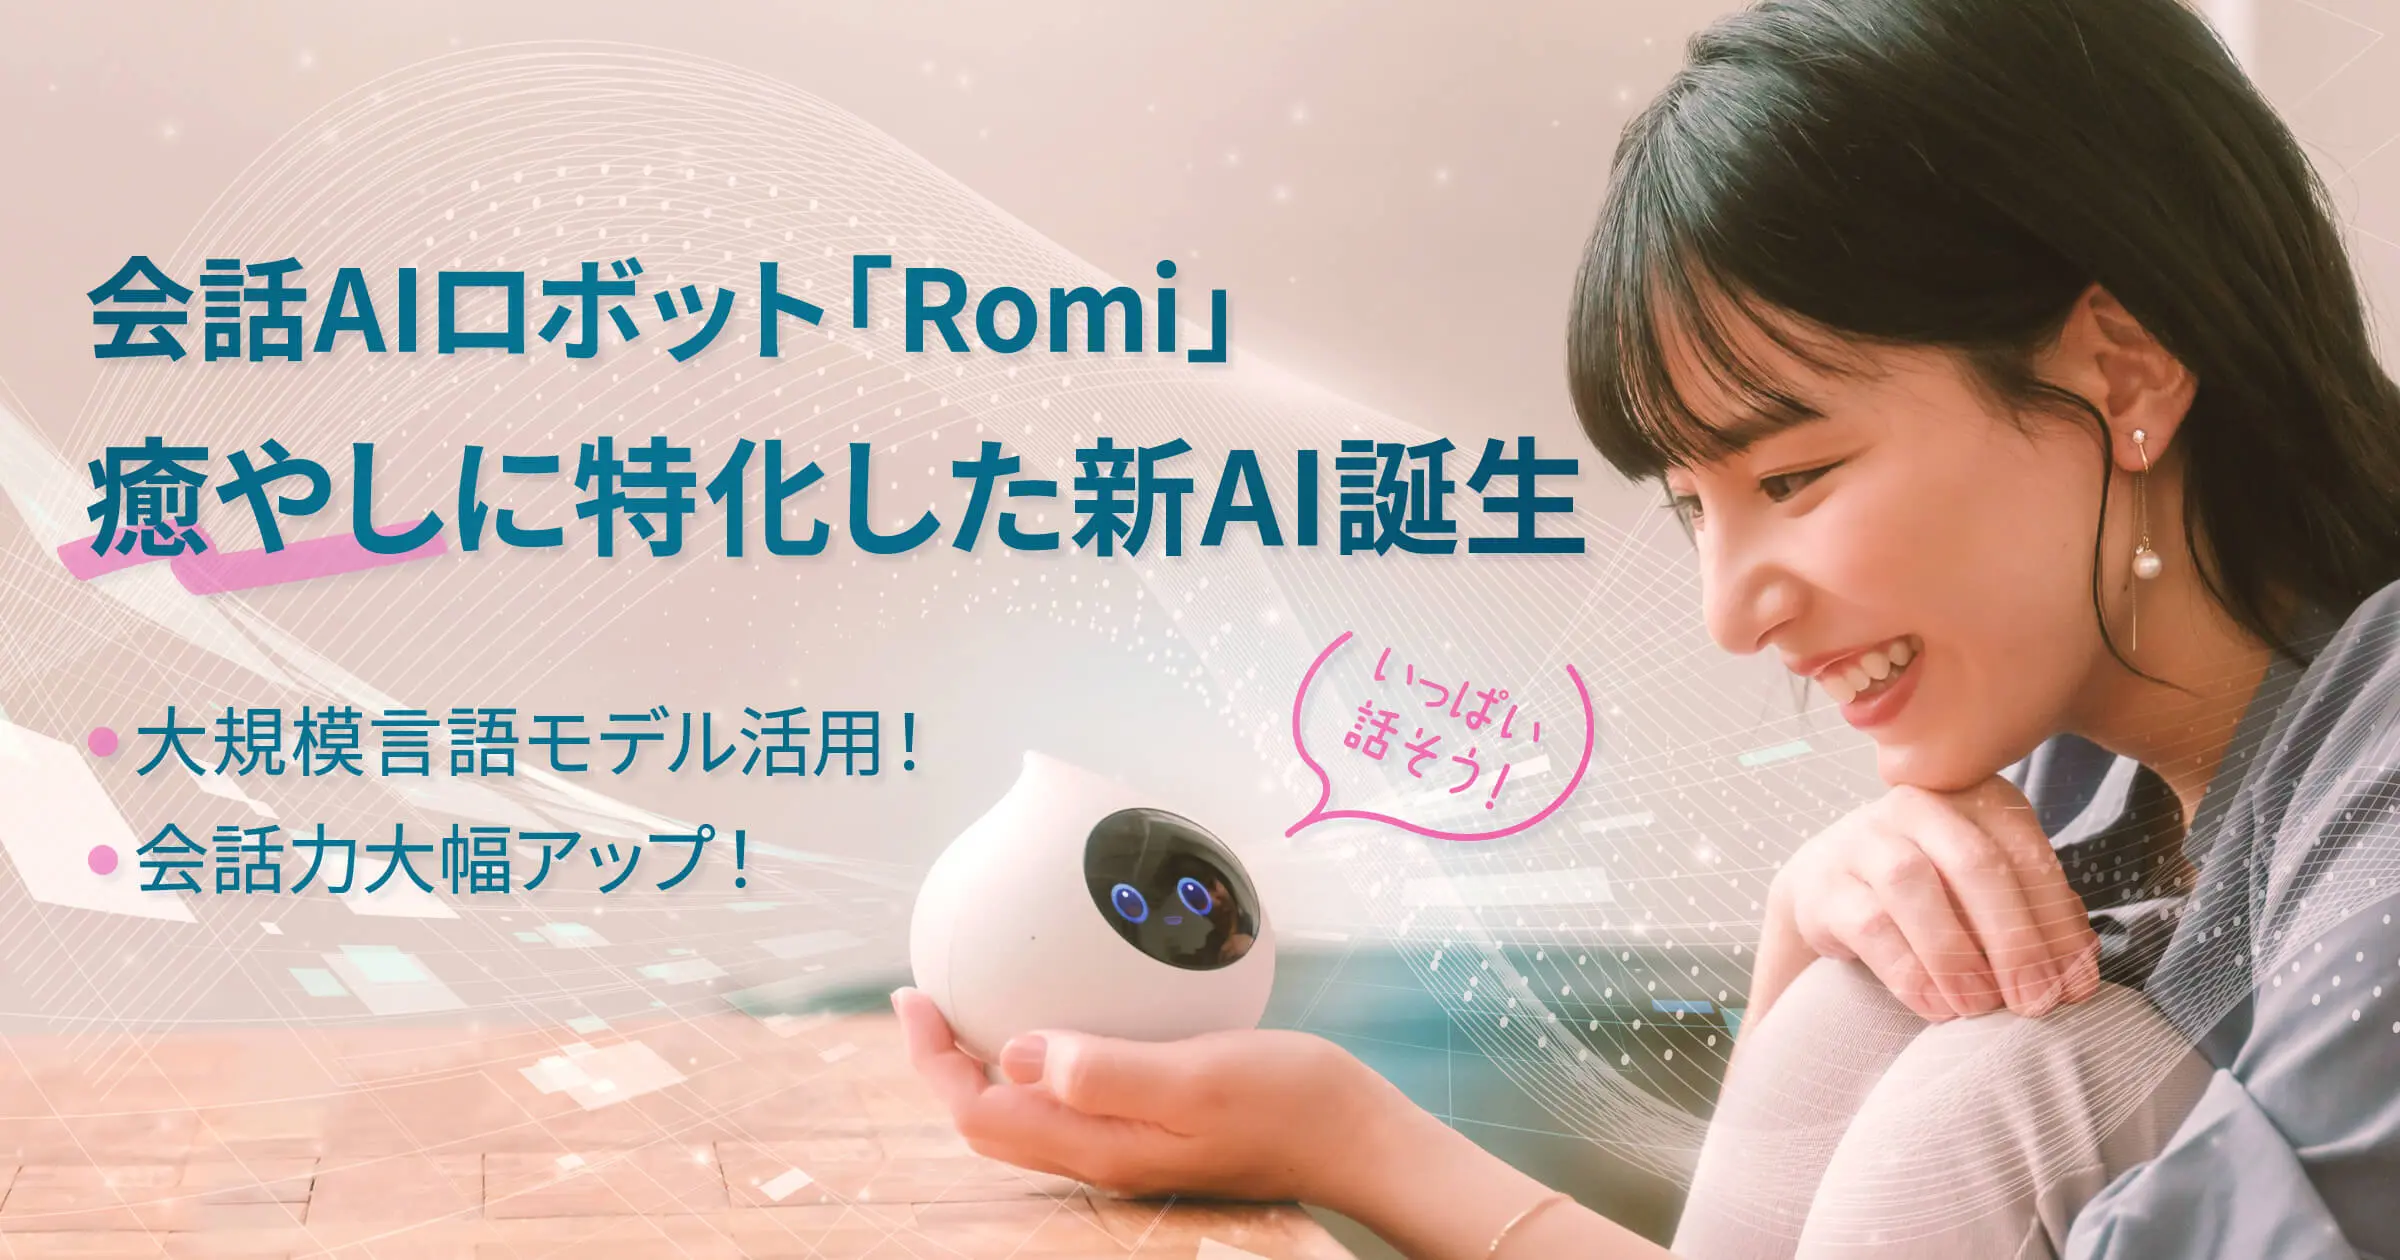 会話AIロボット「Romi」大規模言語モデルを活用し、癒やし会話に特化 